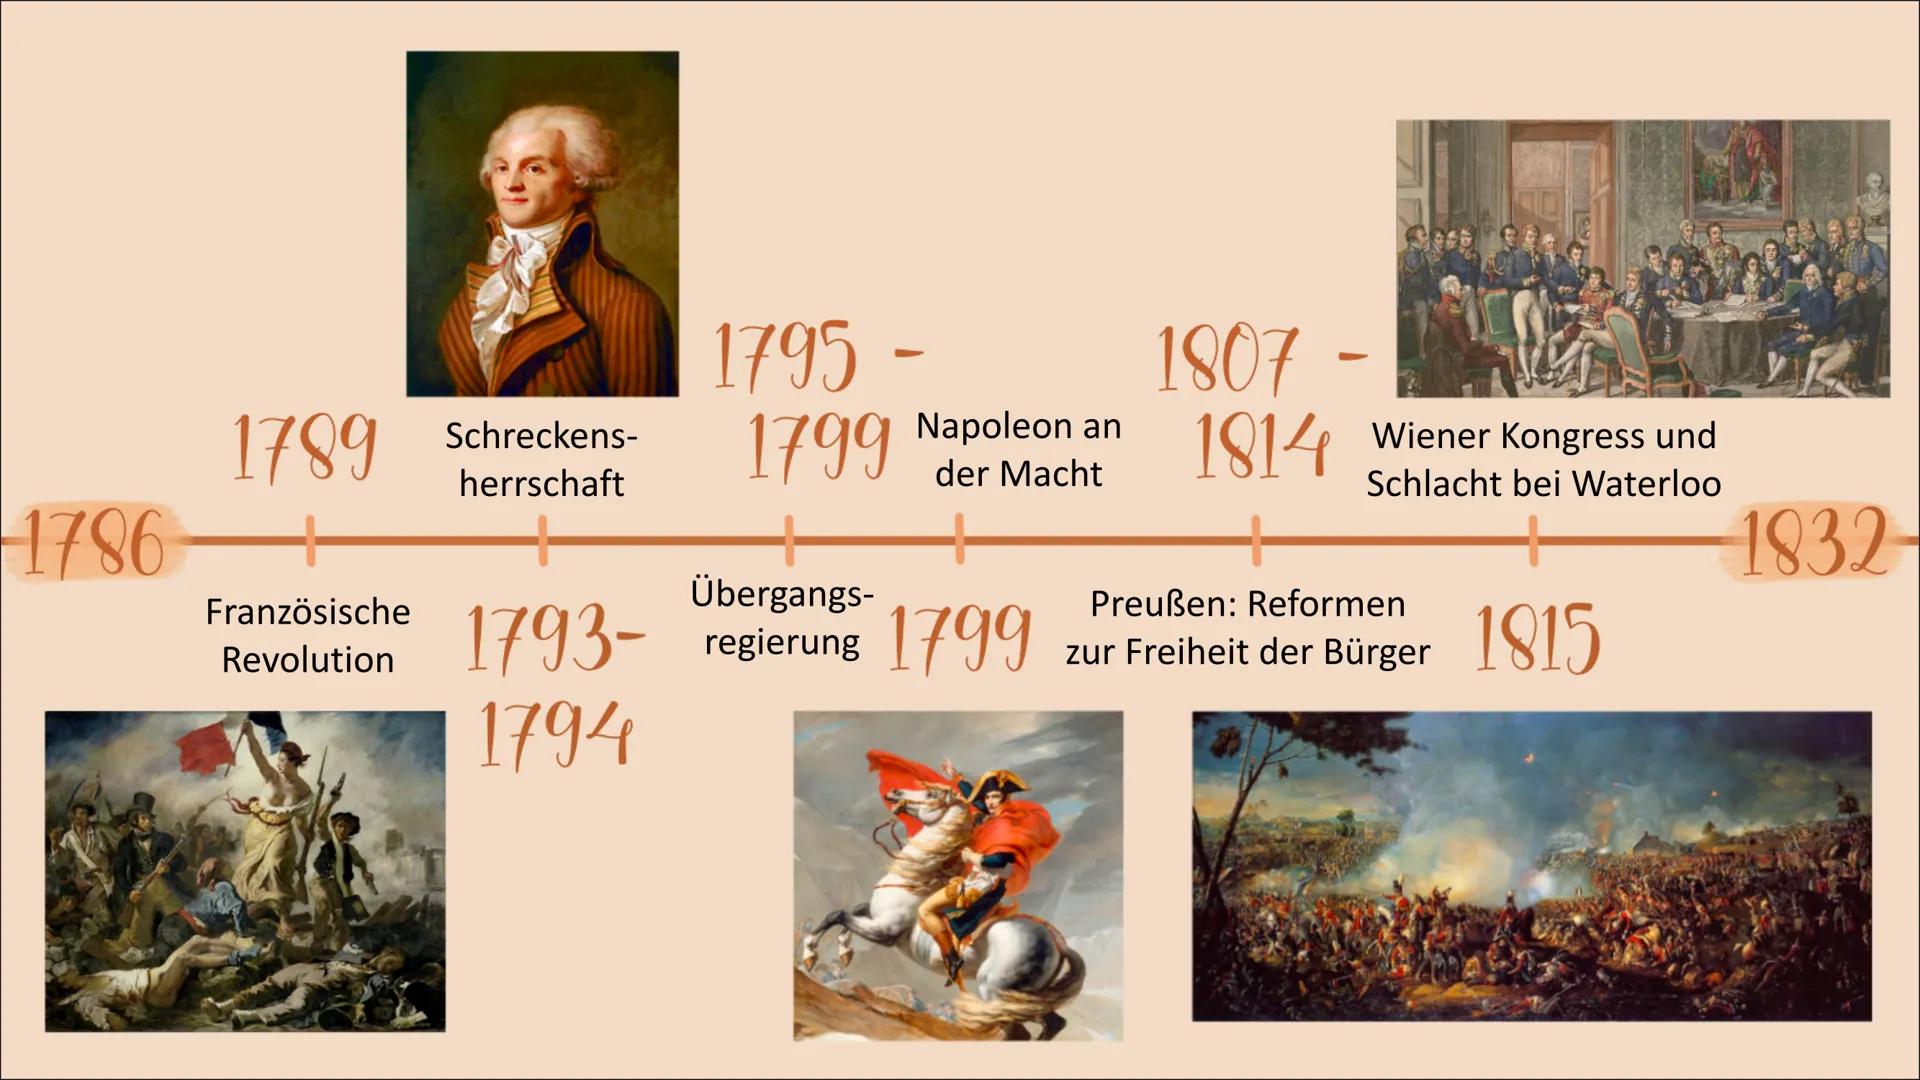 L
Weimarer
Klassik
L Weimarer Klassik
Definition
1786-1832 (Goethes erste Italienreise - Goethes Tod)
- Kulturraum Weimar und Jena
- Großer 